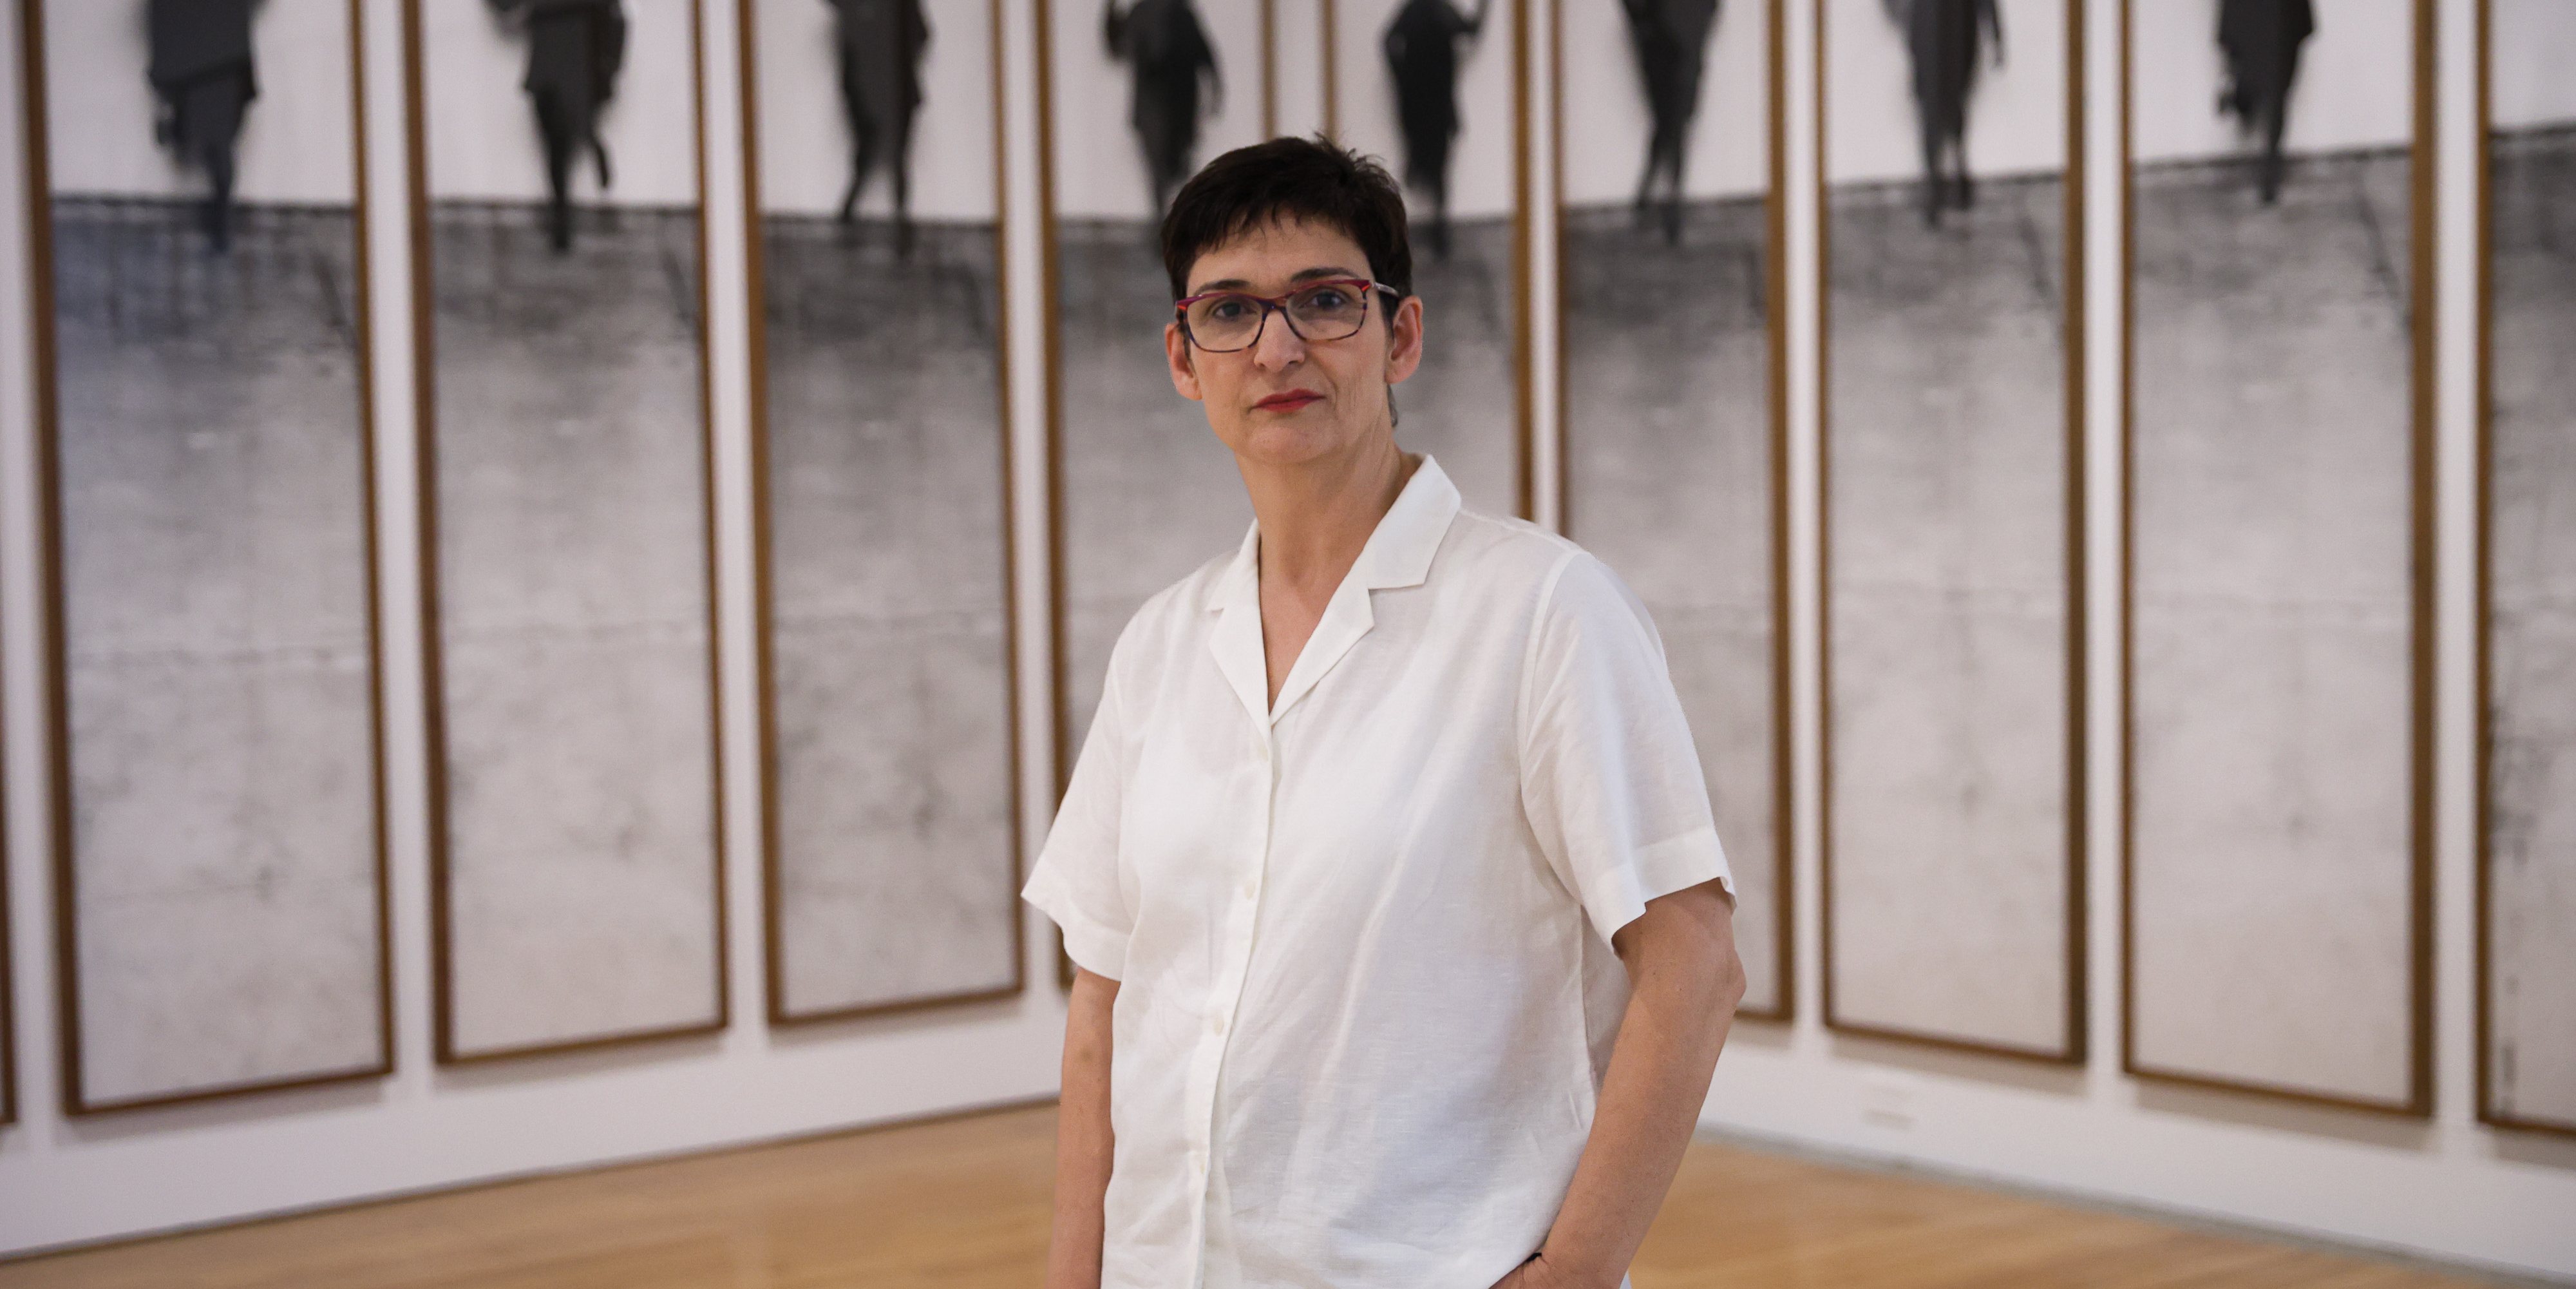 A curadora espanhola Nuria Enguita, 57 anos, é a primeira diretora artística do Museu de Arte Contemporânea – Centro Cultural de Belém (MAC/CCB), antigo Museu Coleção Berardo, em Lisboa